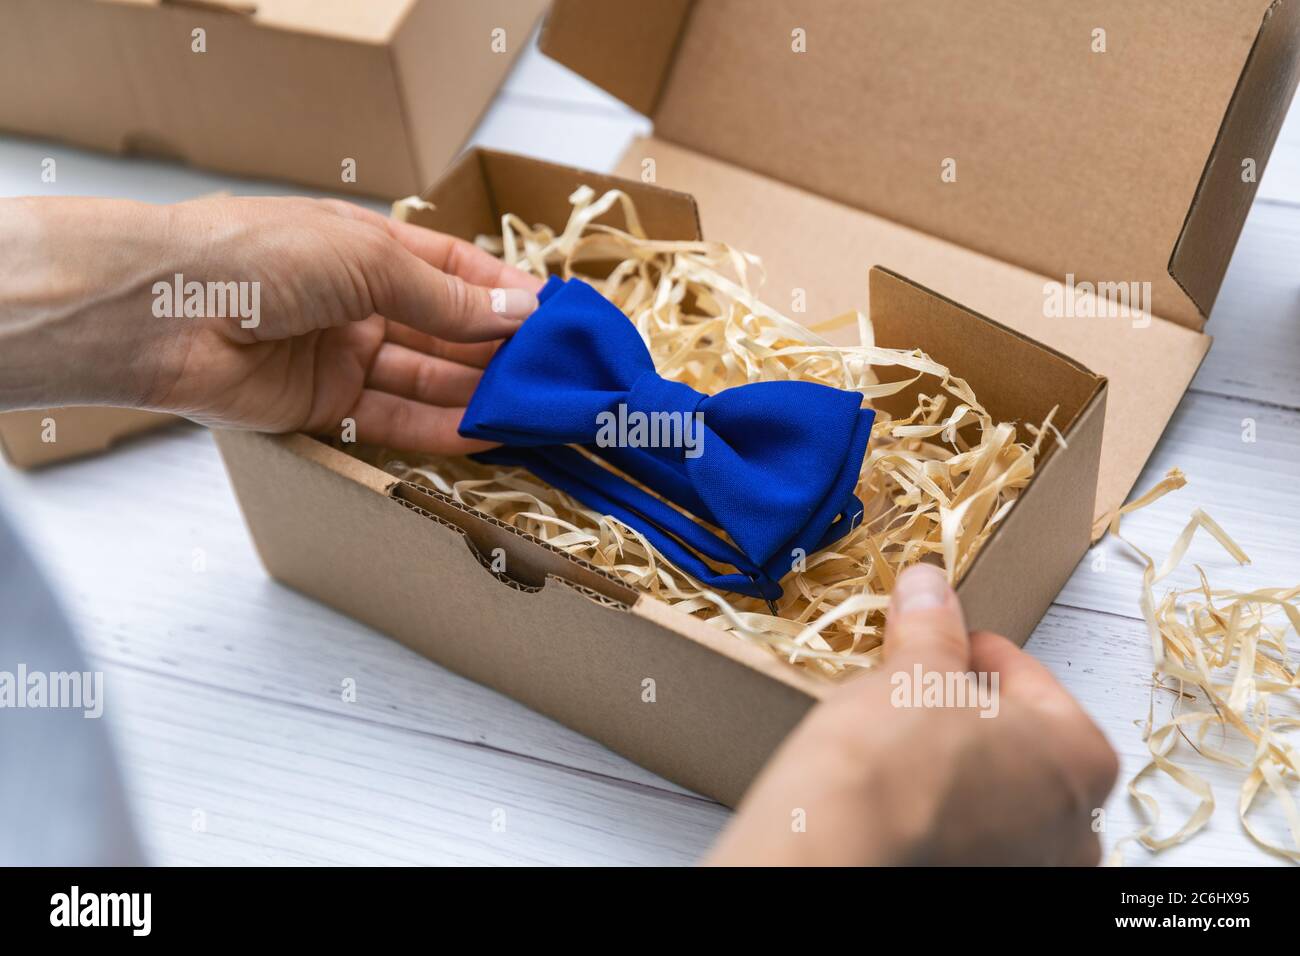 Nähhandwerk Business - Näherin Verpackung blau Stoff Fliege in Karton für den Versand Stockfoto